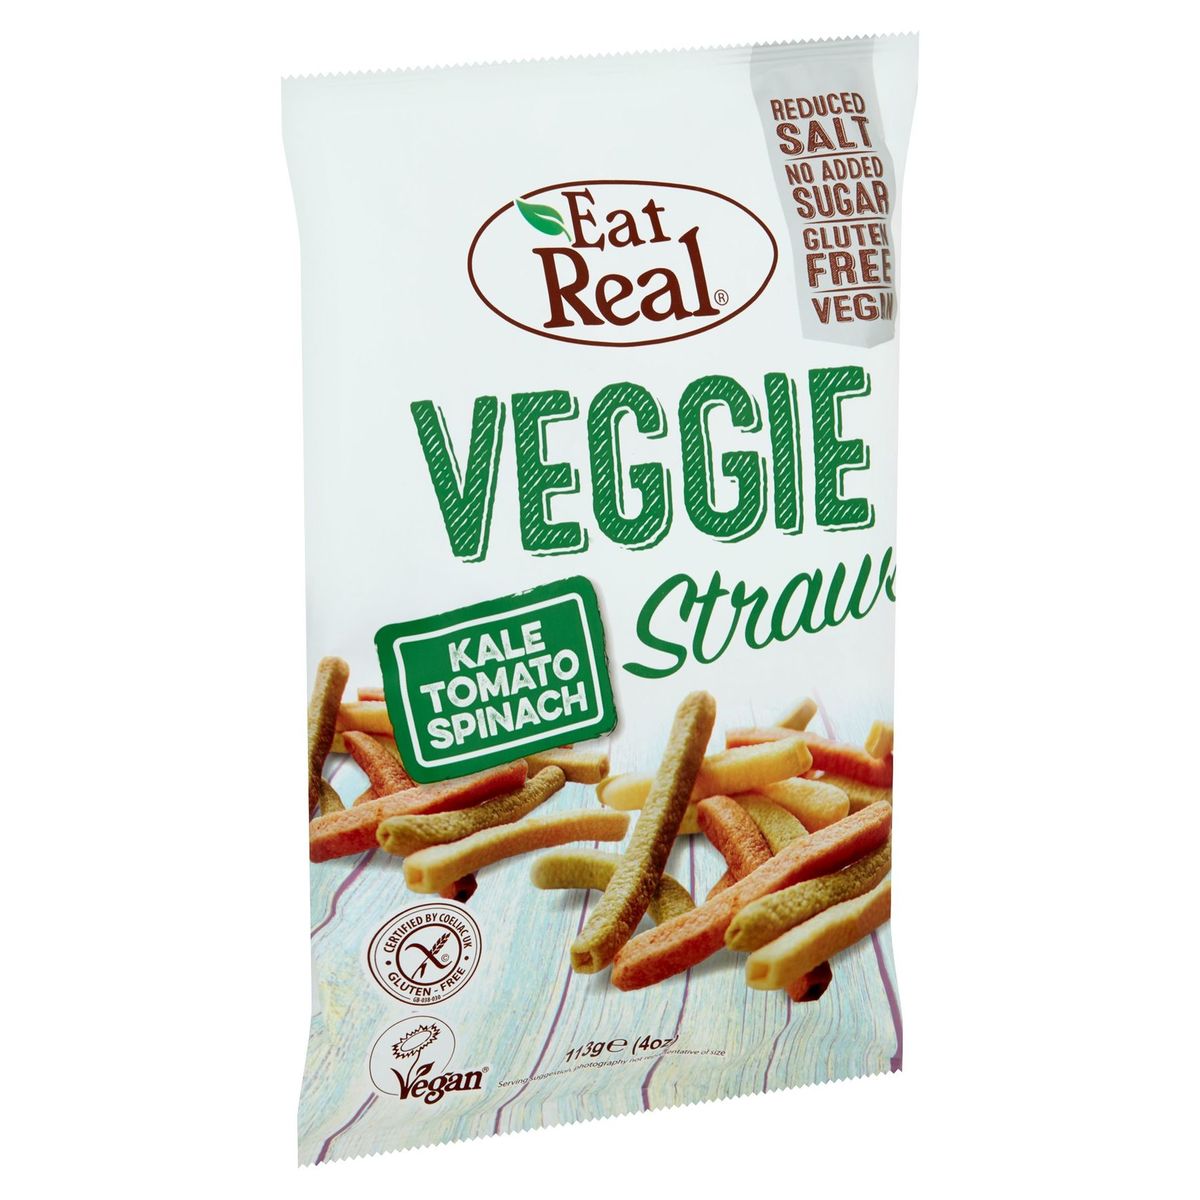 Eat Real Veggie Straws 113 g